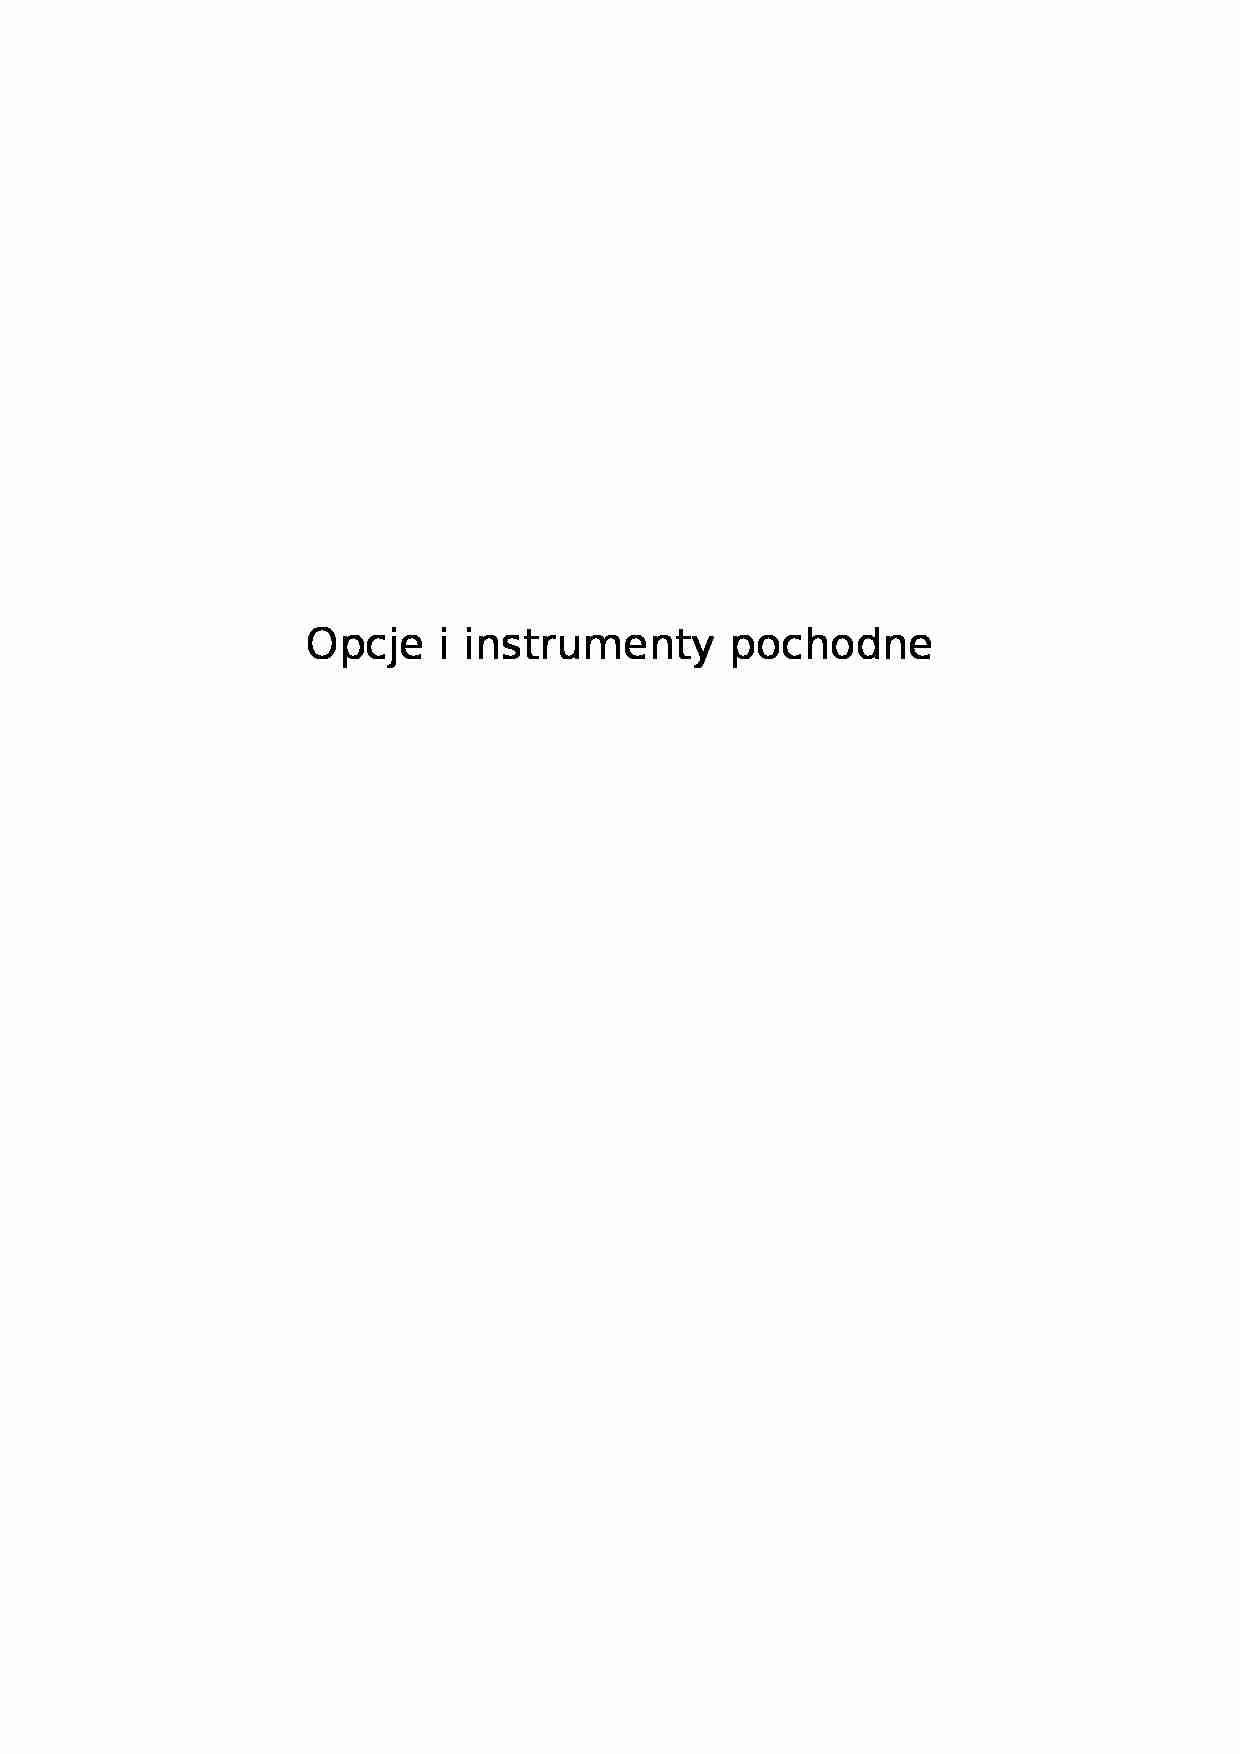 Opcje i instrumenty pochodne - strona 1